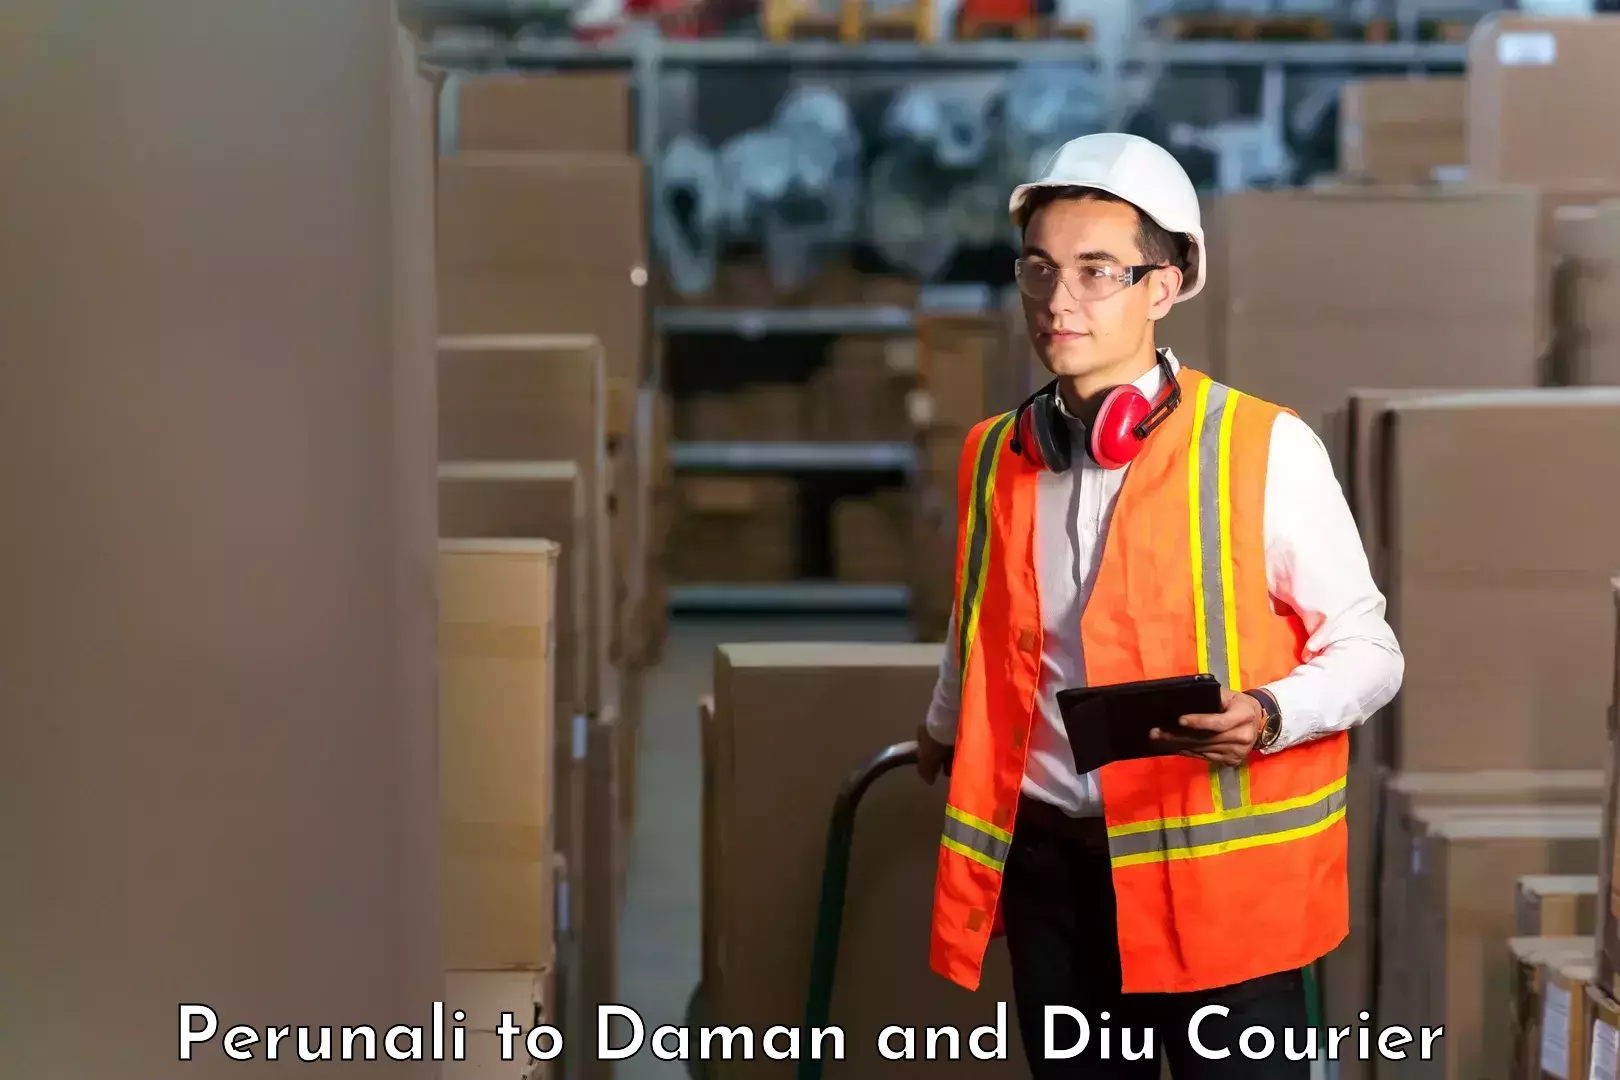 Courier service comparison Perunali to Daman and Diu